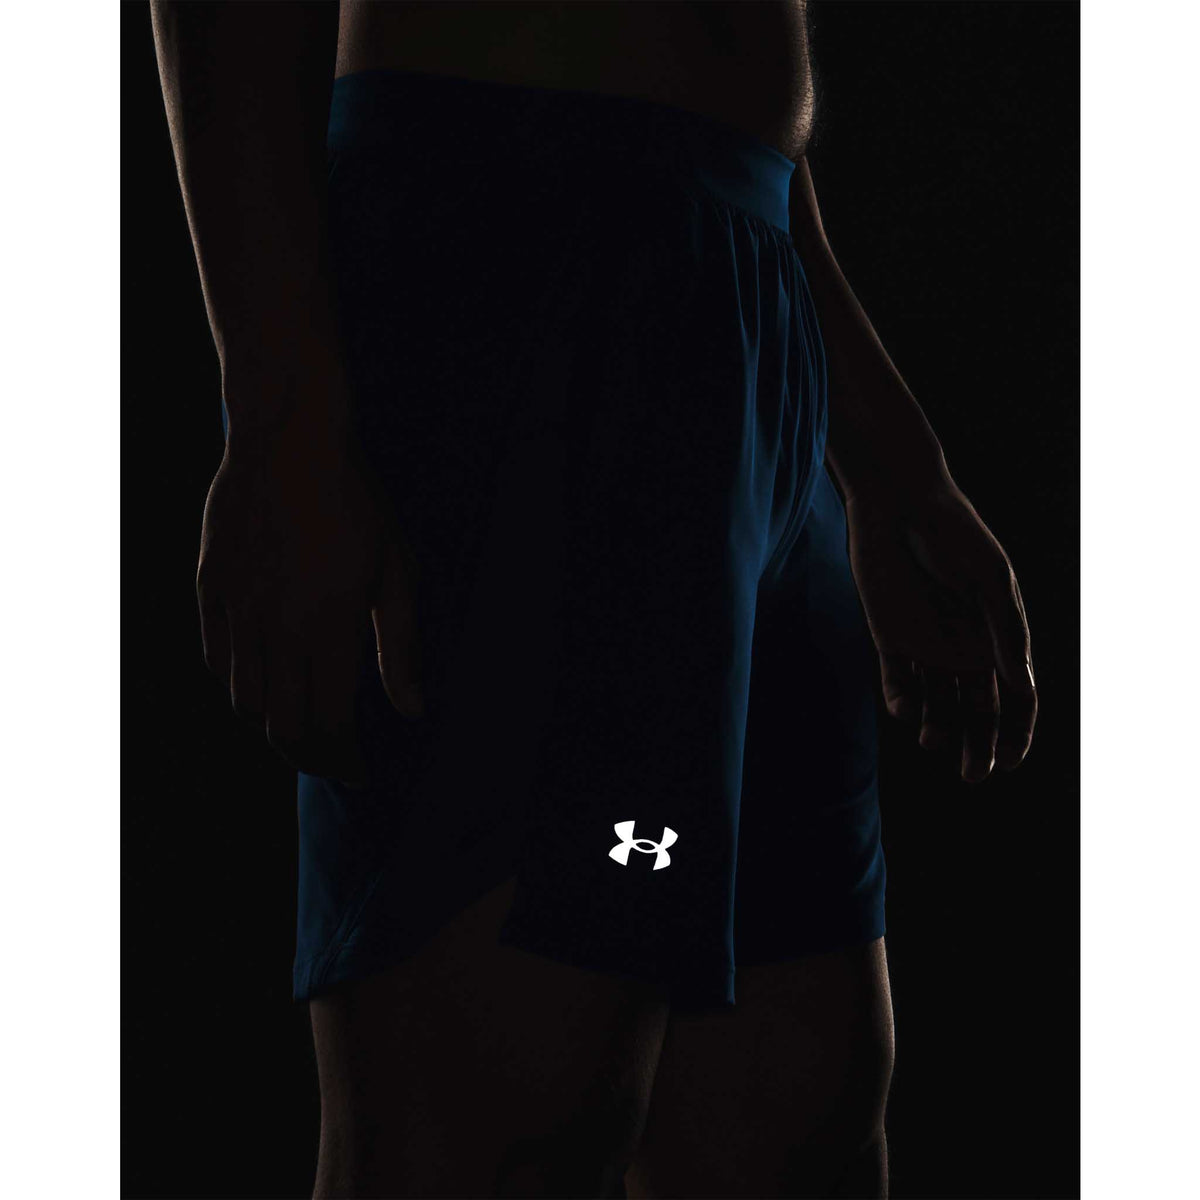 Under Armour Launch 7 pouces shorts homme logo réfléchissant- Varsity Blue / Reflective